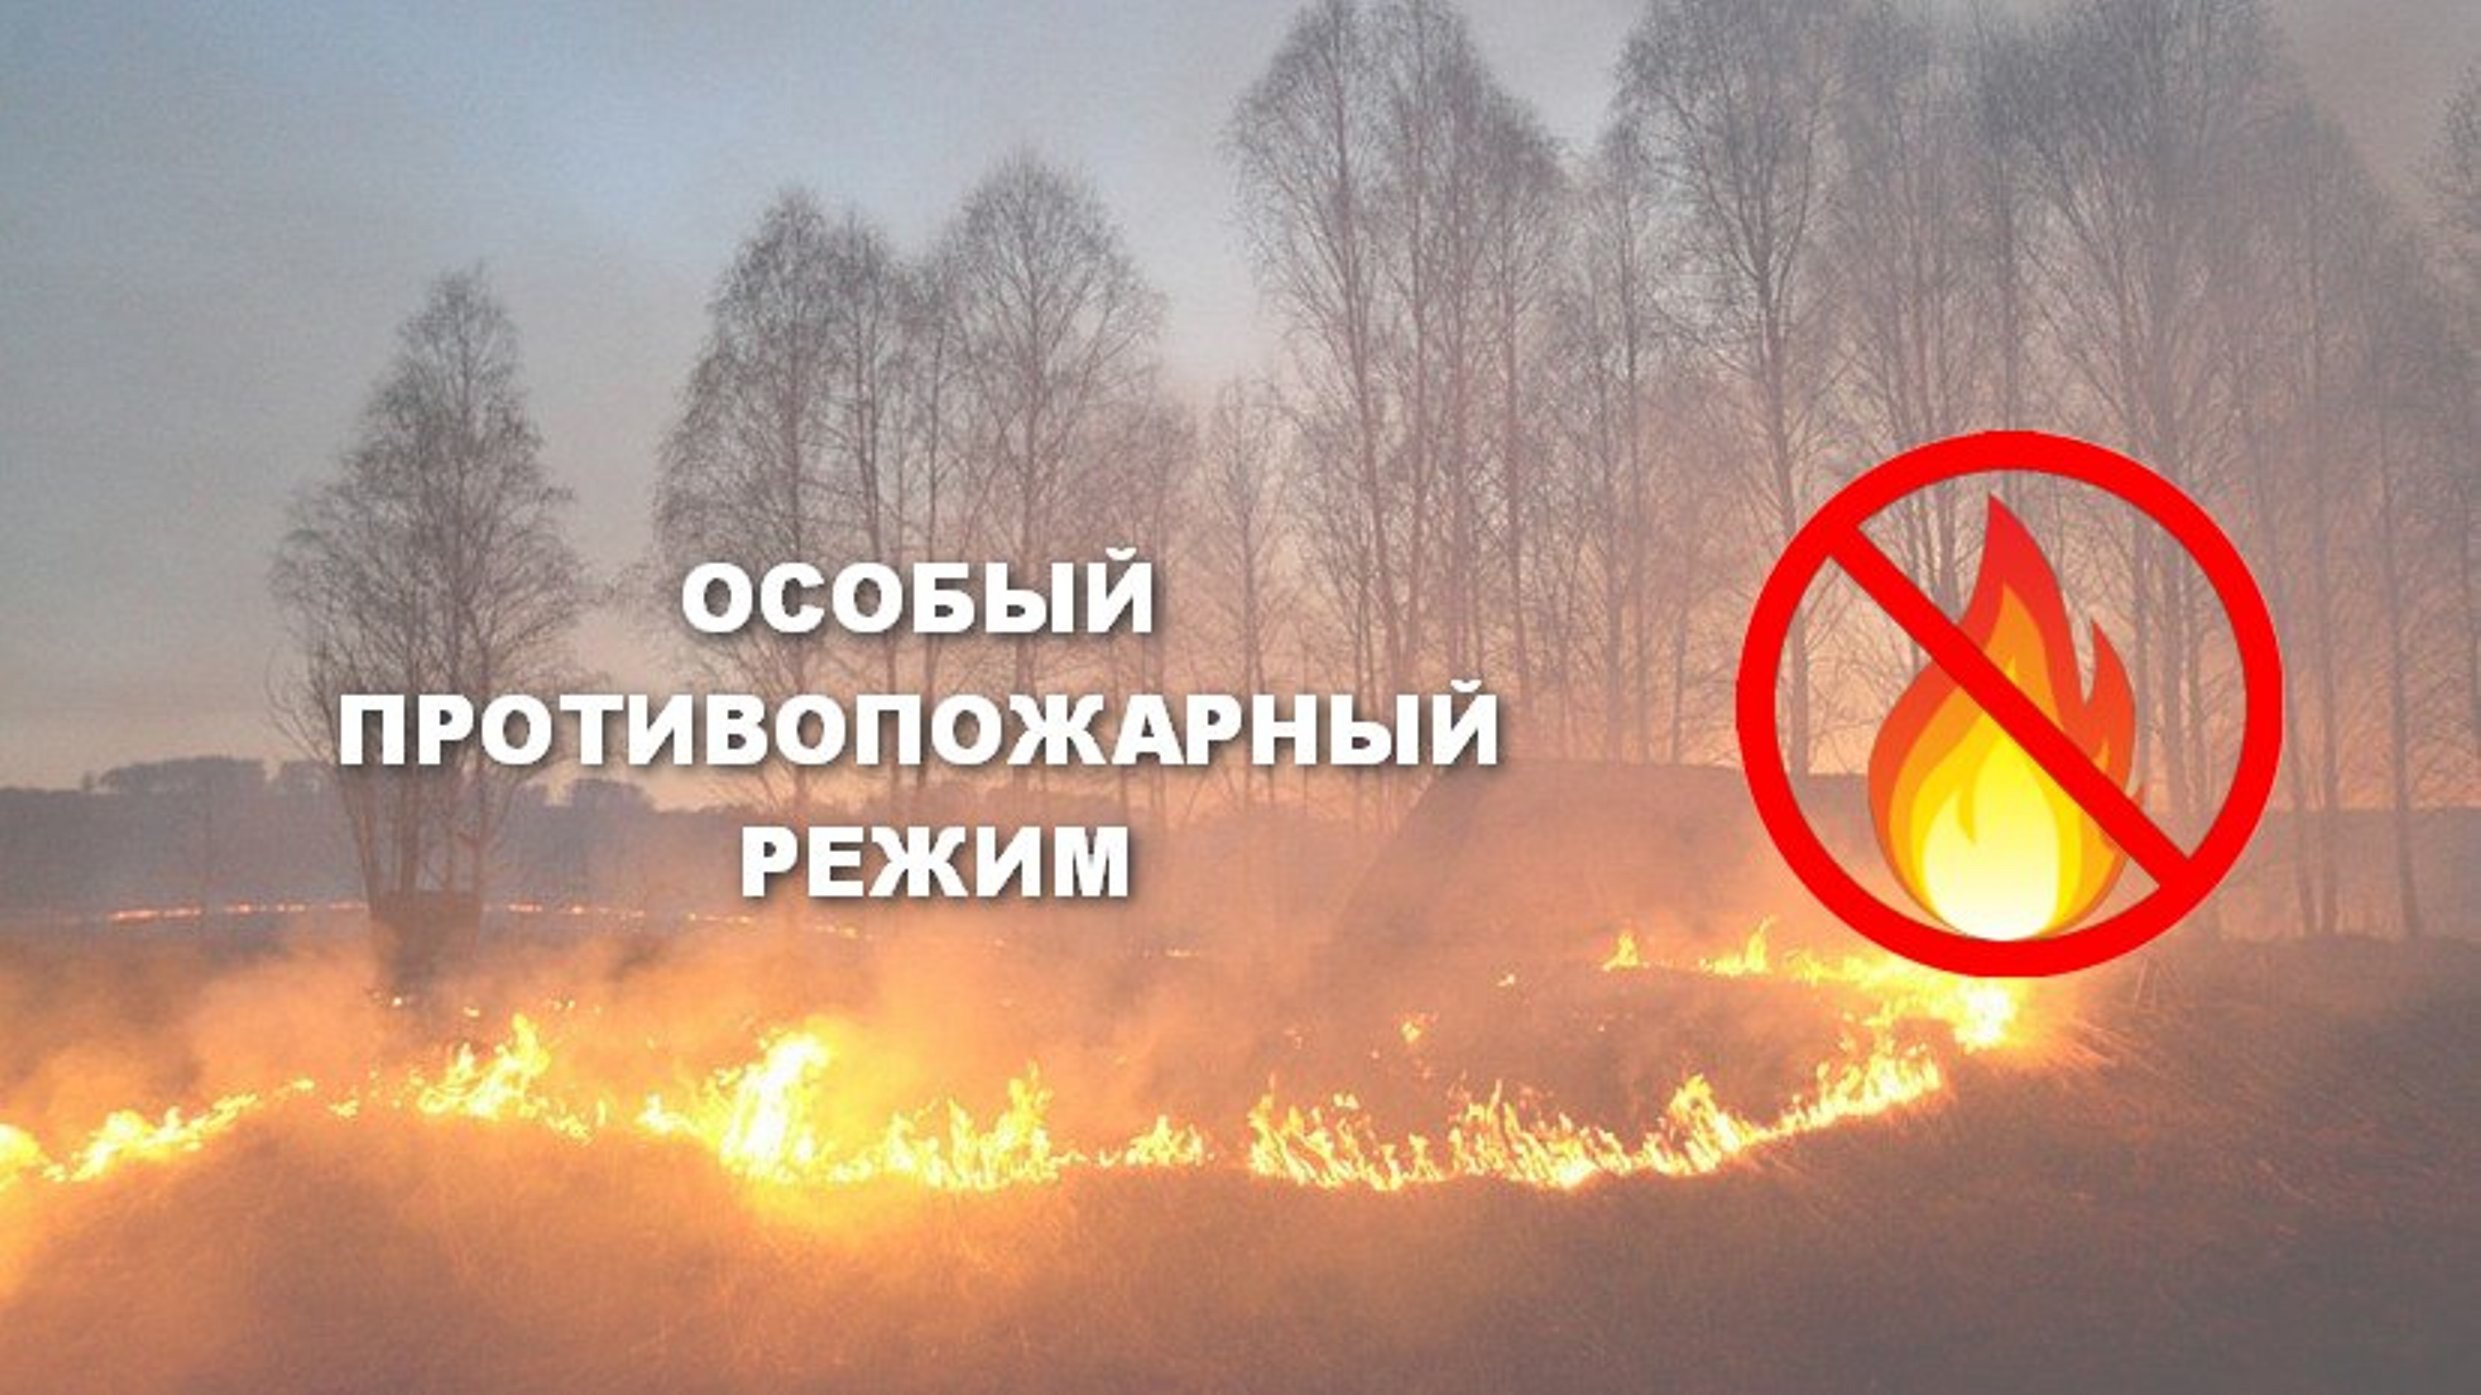 Особый противопожарный режим, за исключением земель лесного фонда, расположенных на территории Новгородской области.